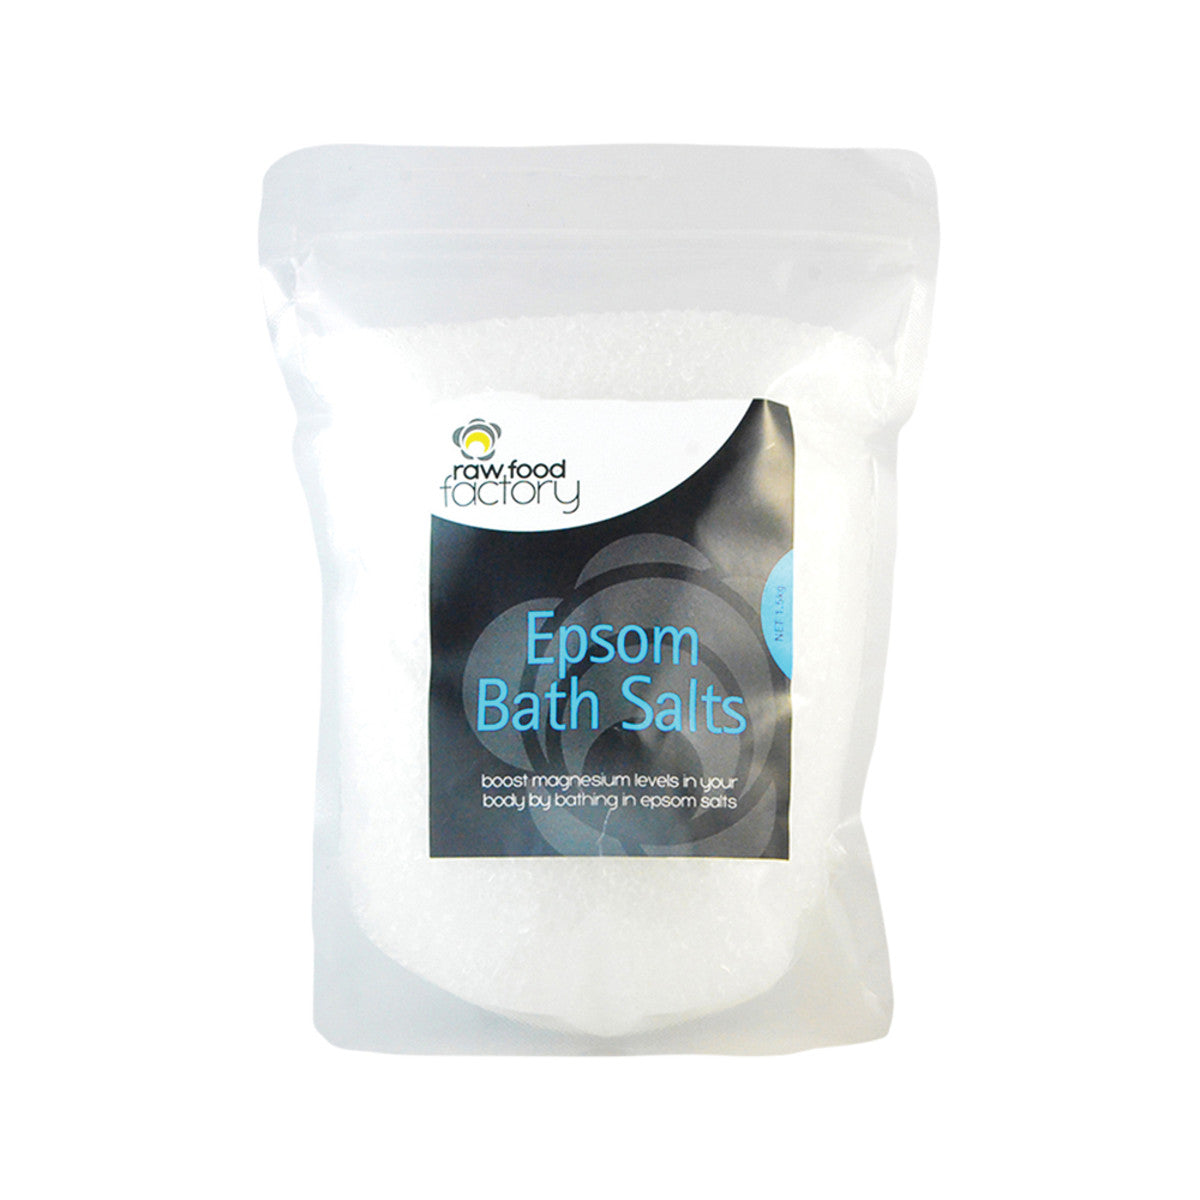 Raw Food Factory Epsom Bath Salts 1.5kg